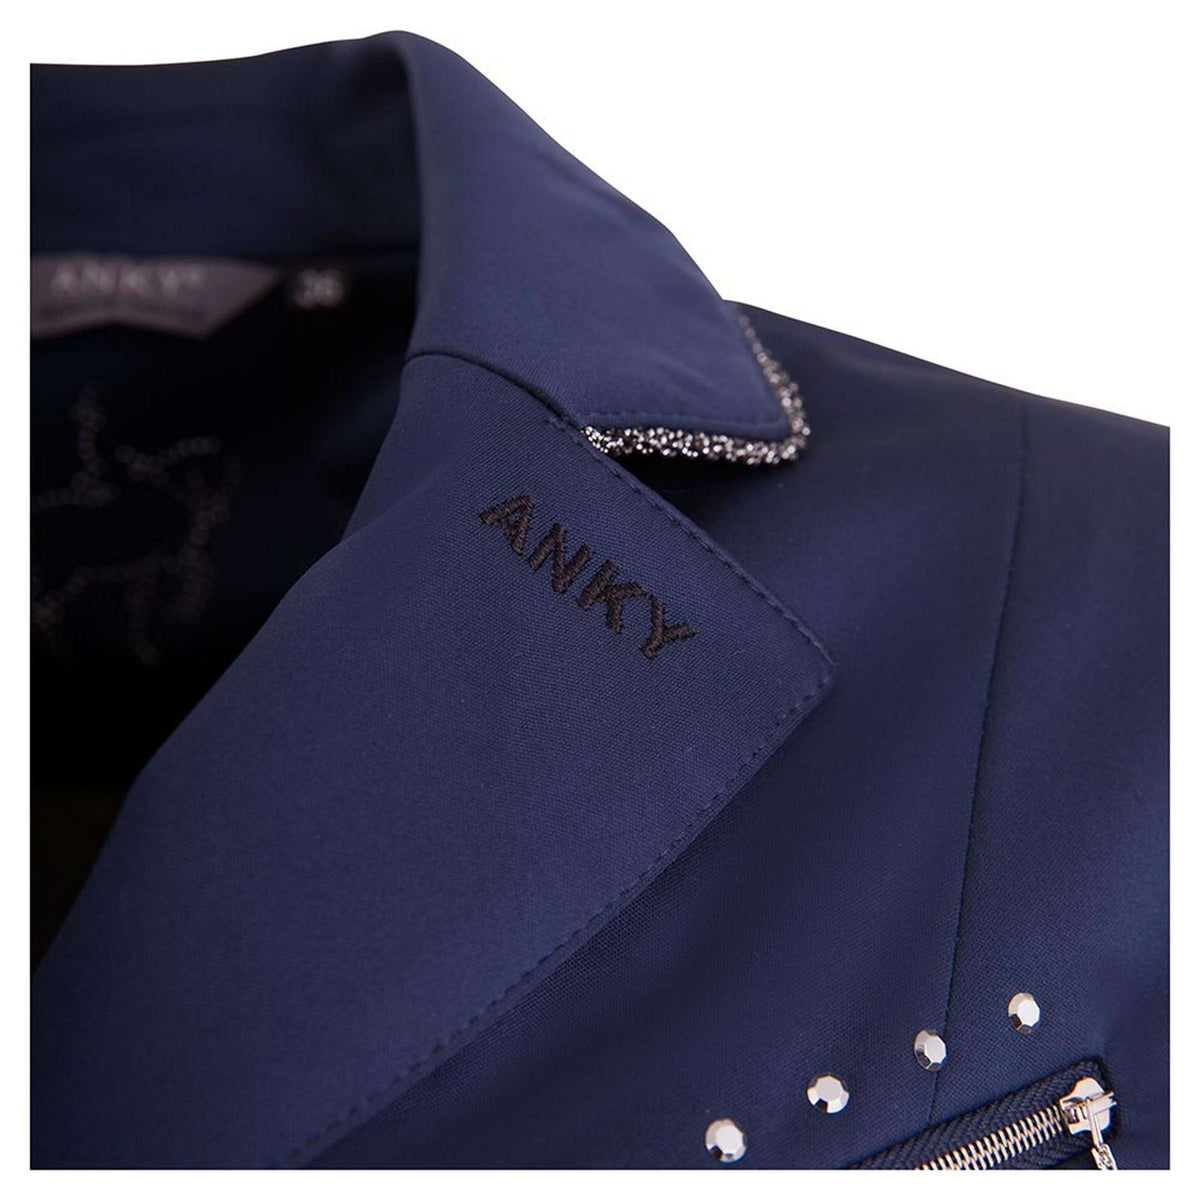 Anky Turnierjacket Zipped Softshell C-Wear Navy